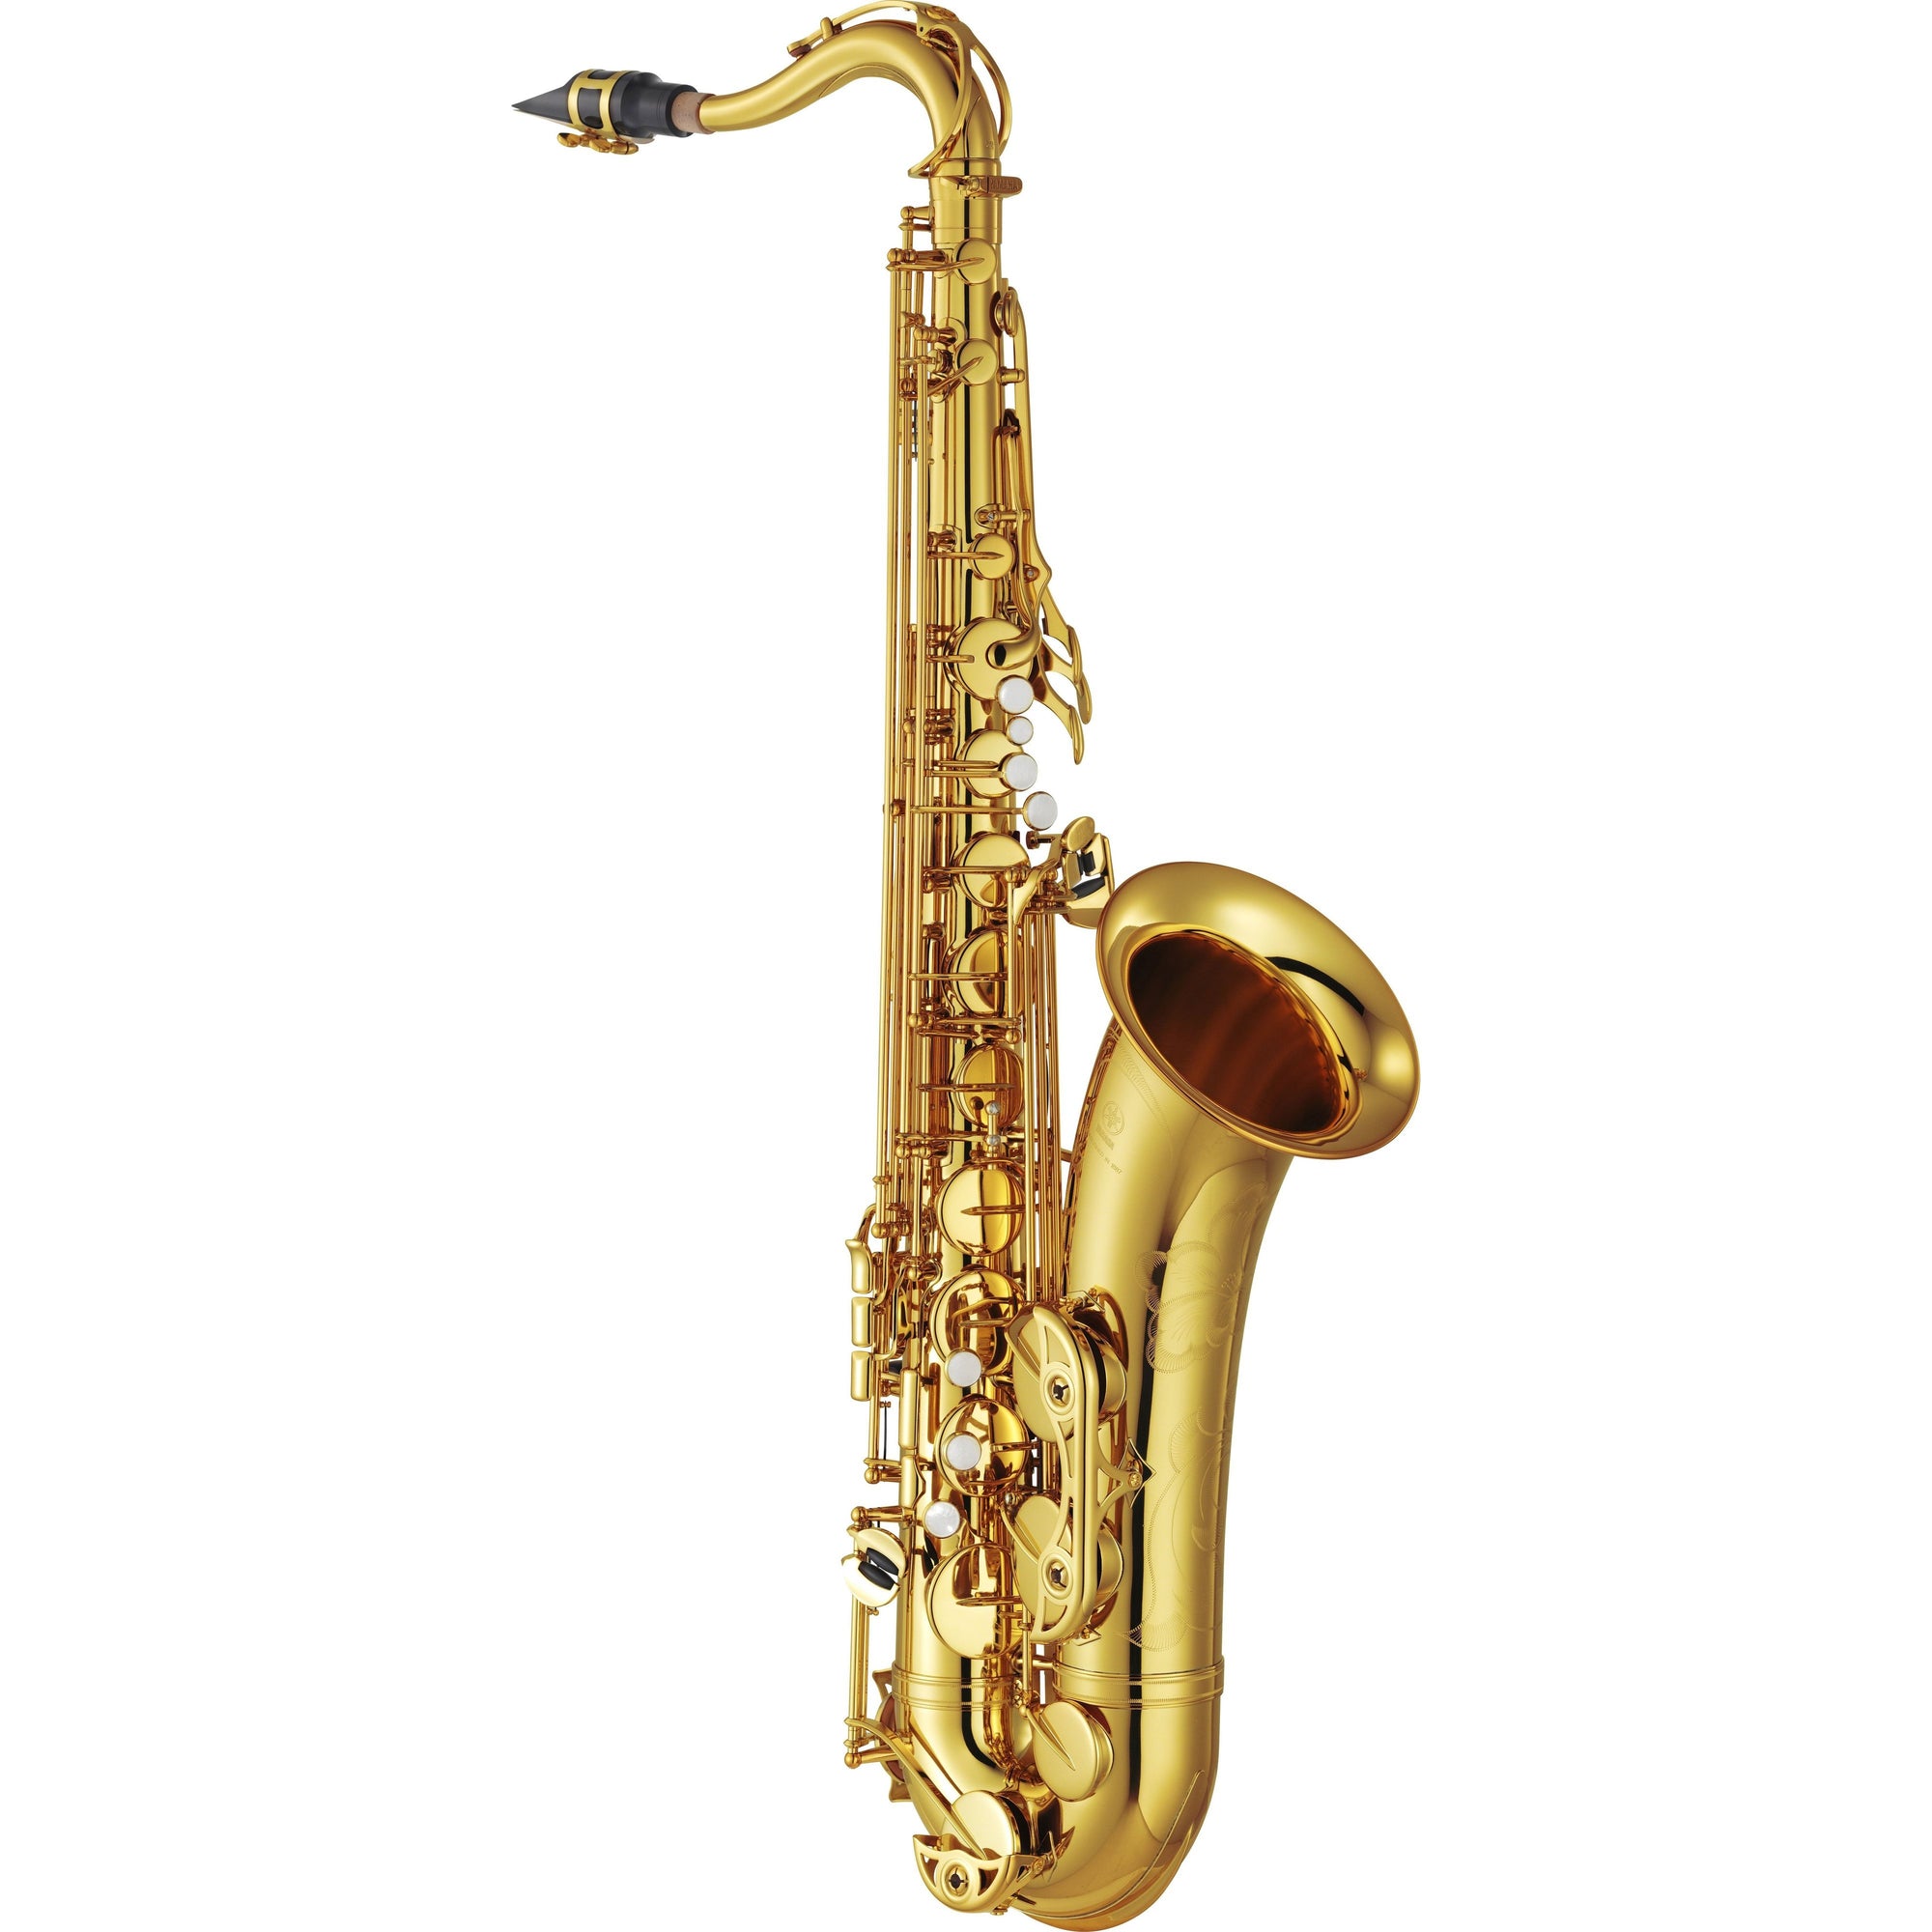 Yamaha - YTS-62 - Professional Tenor Saxophone-Saxophone-Yamaha-Music Elements